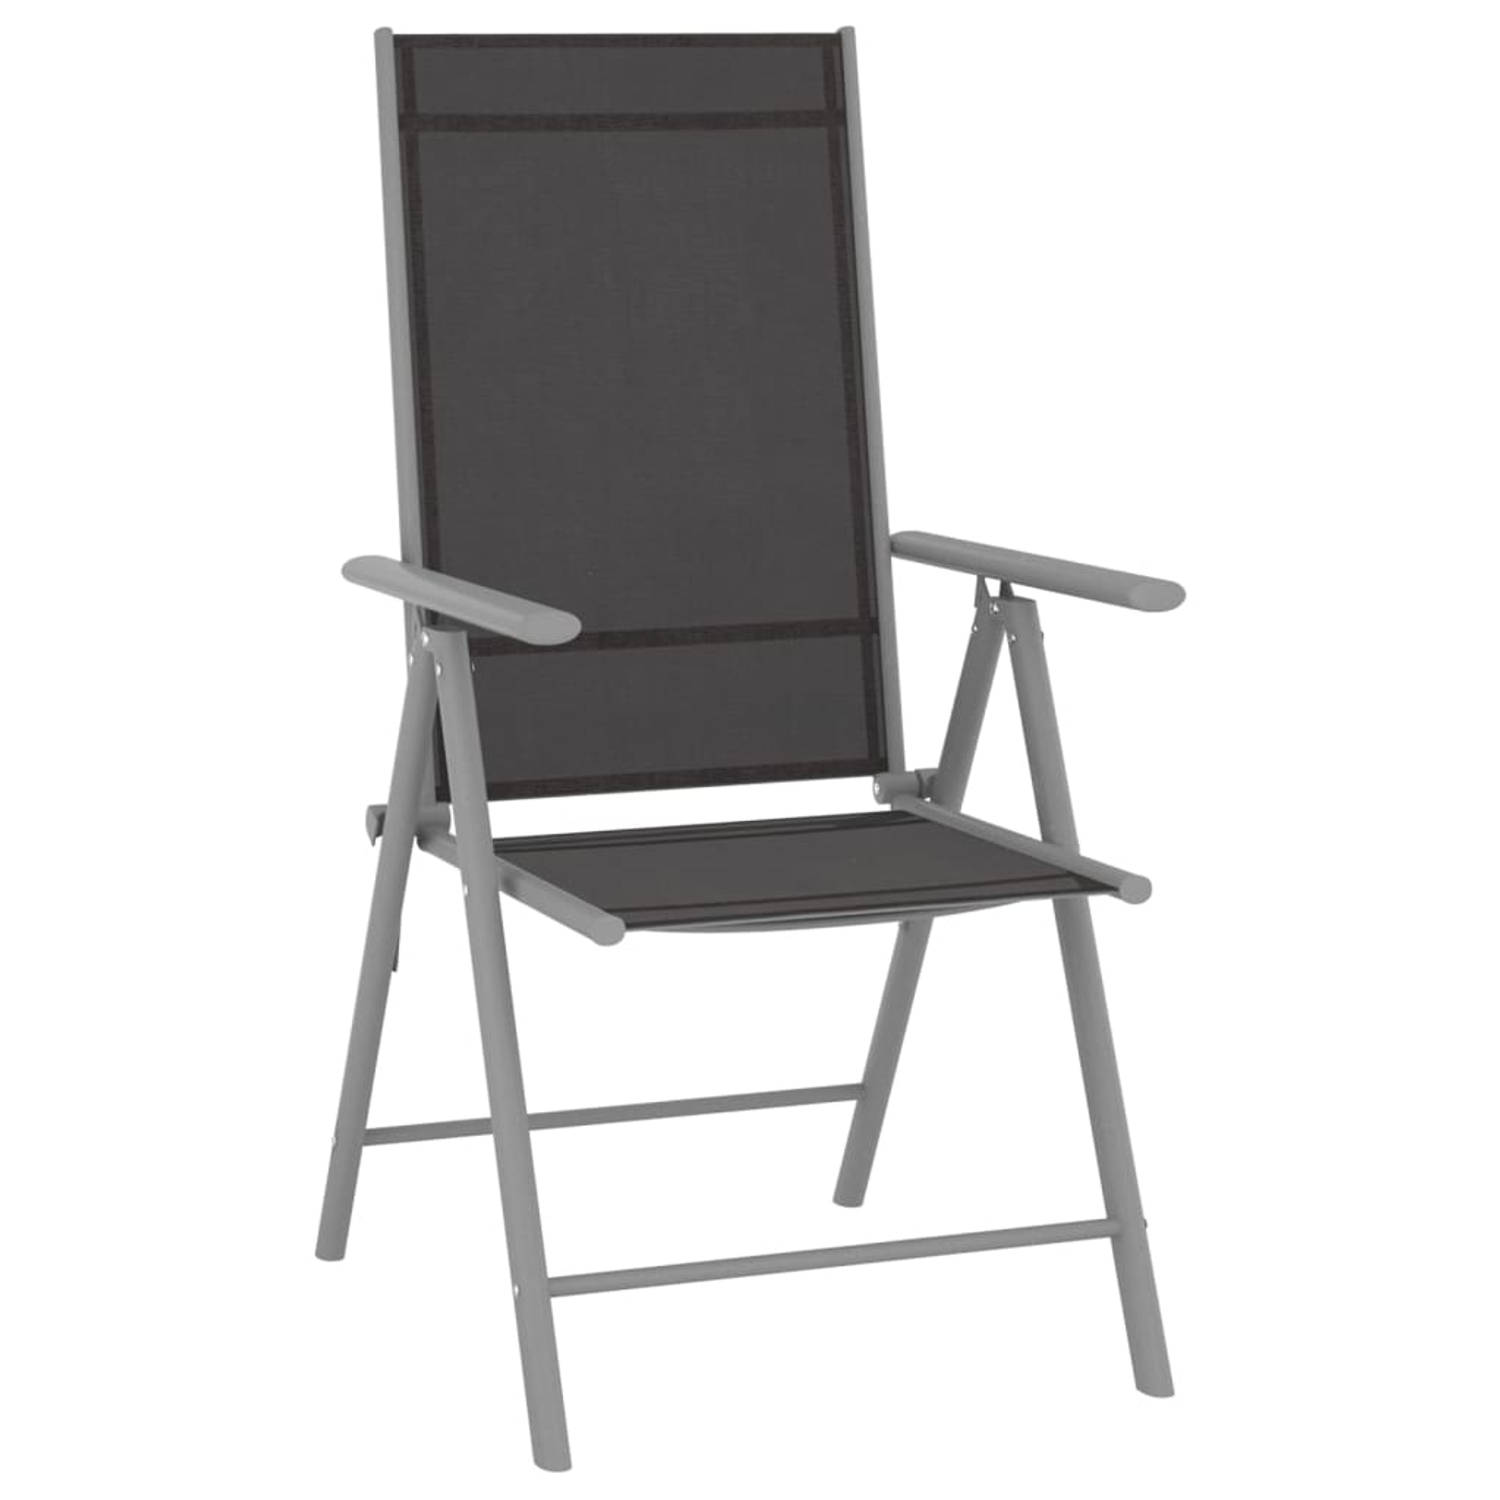 The Living Store Tuinset - Aluminium - Zwart/Zilver/Lichtgrijs - 6 stoelen - 1 ligstoel - 2 voetensteunen/tafels - 1 eettafel